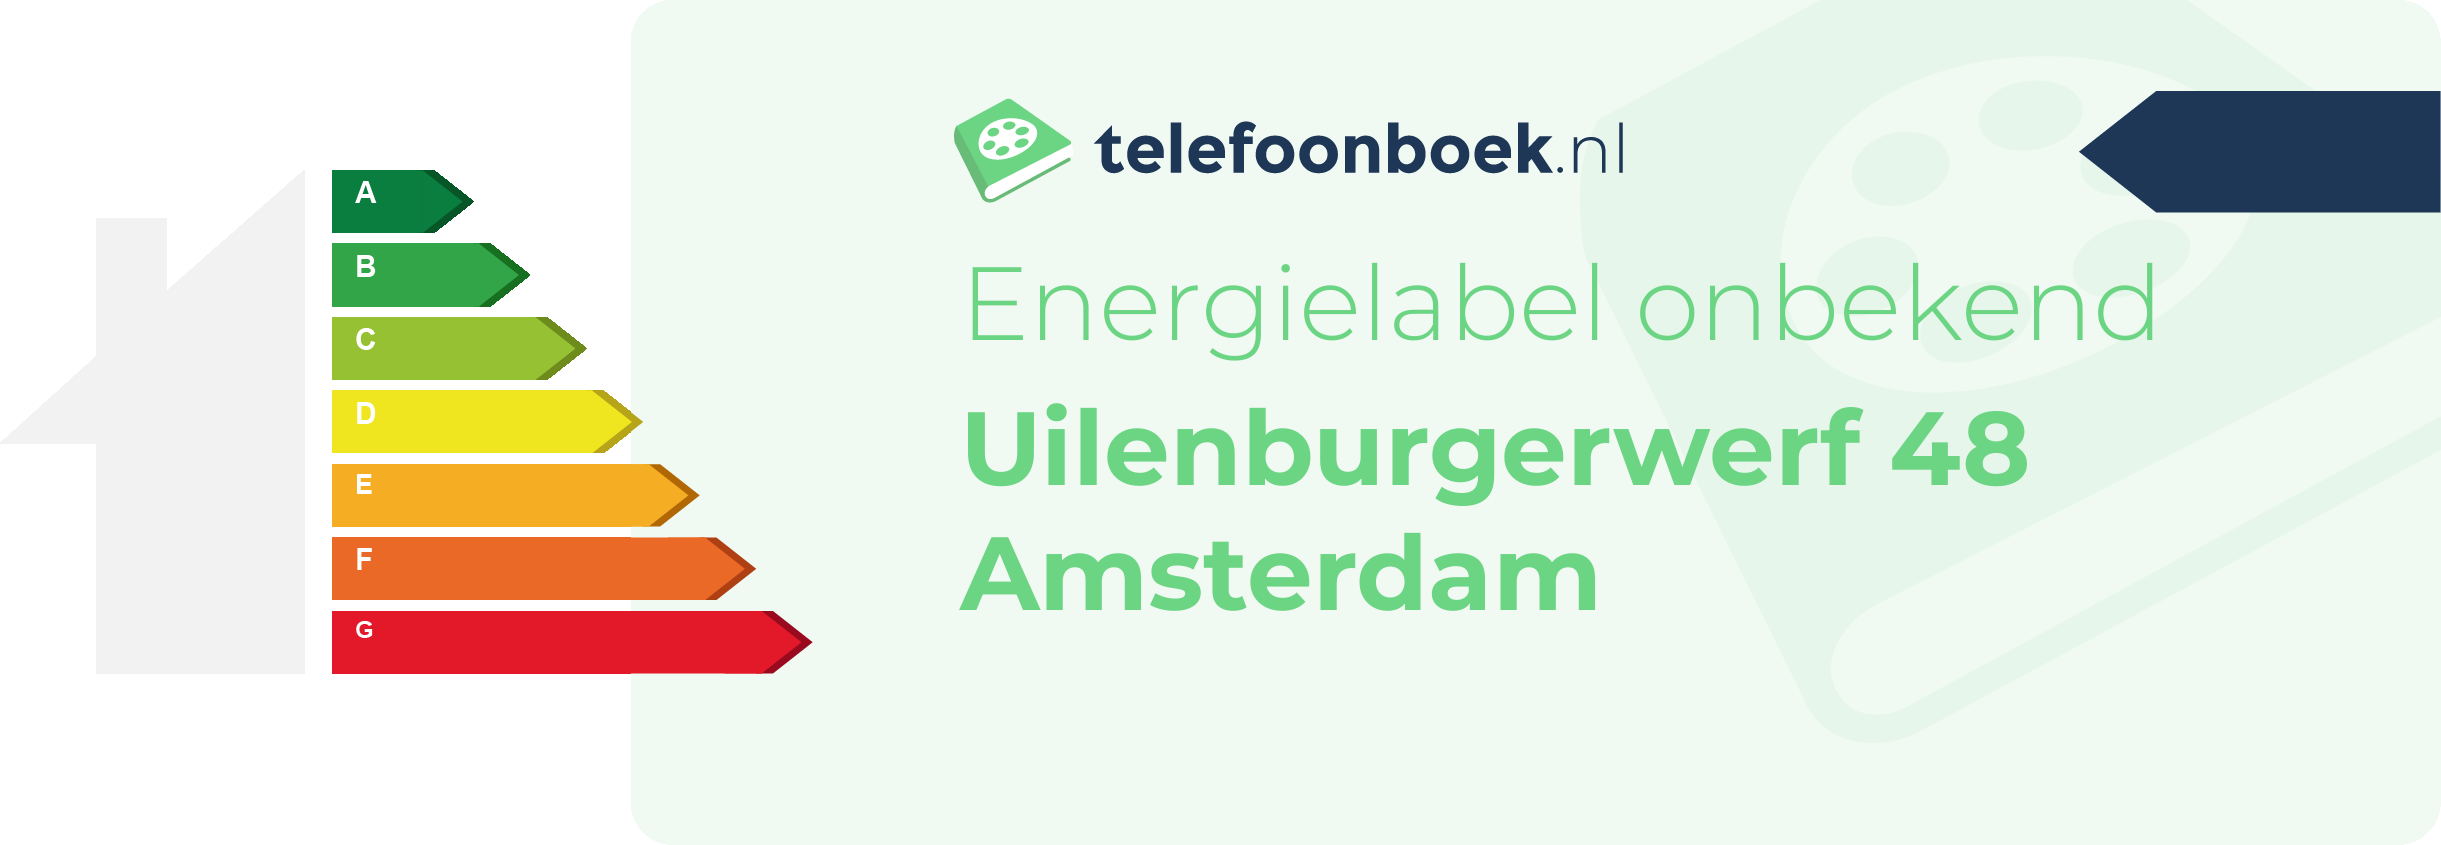 Energielabel Uilenburgerwerf 48 Amsterdam